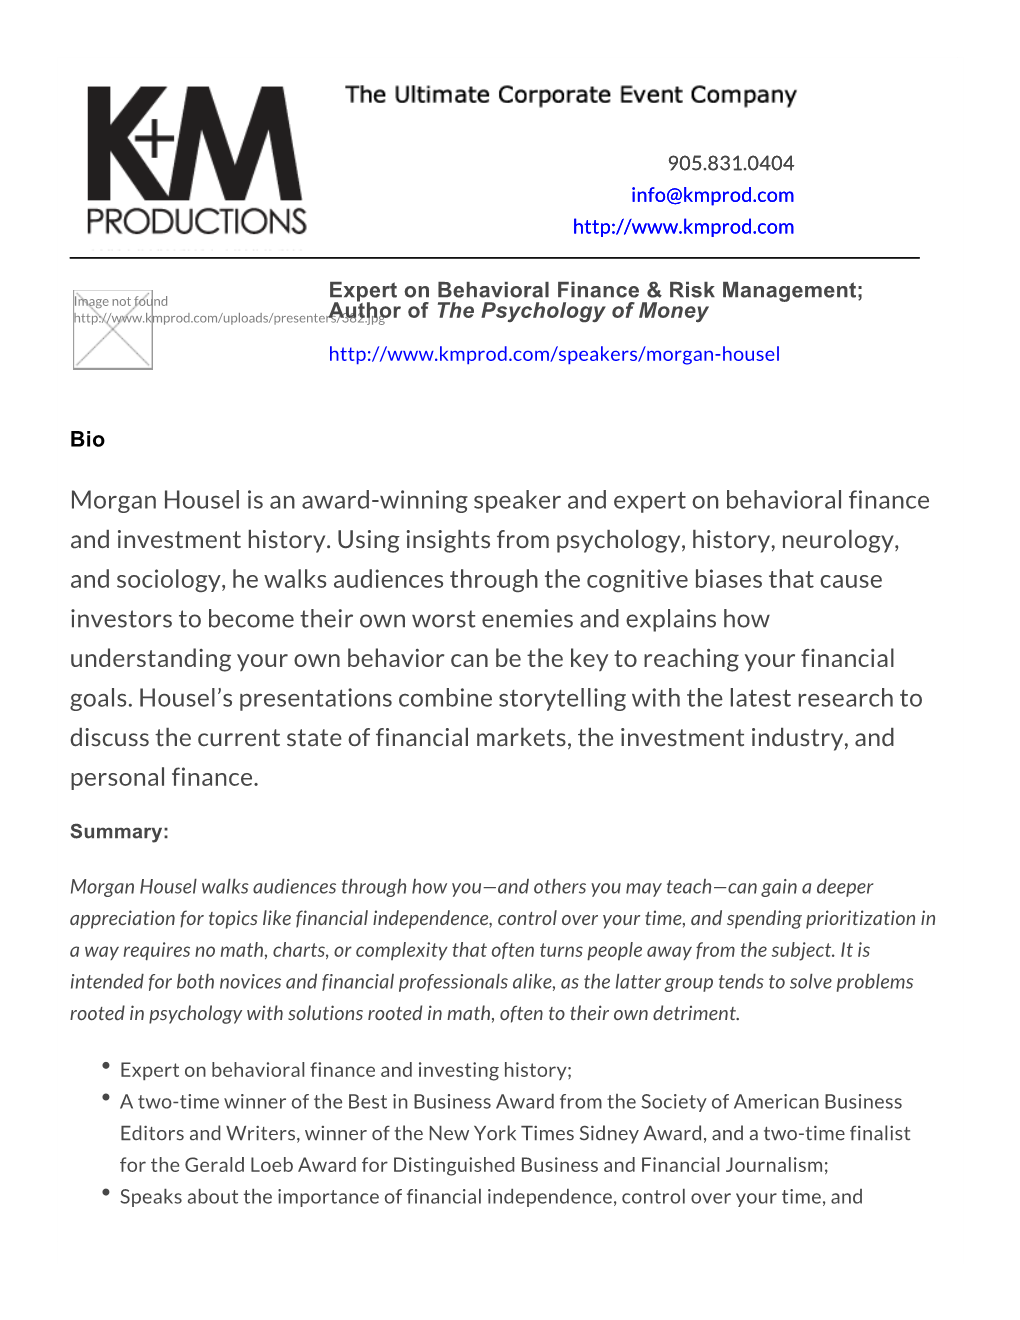 Morgan Housel | Speaker | Behavioral Finance